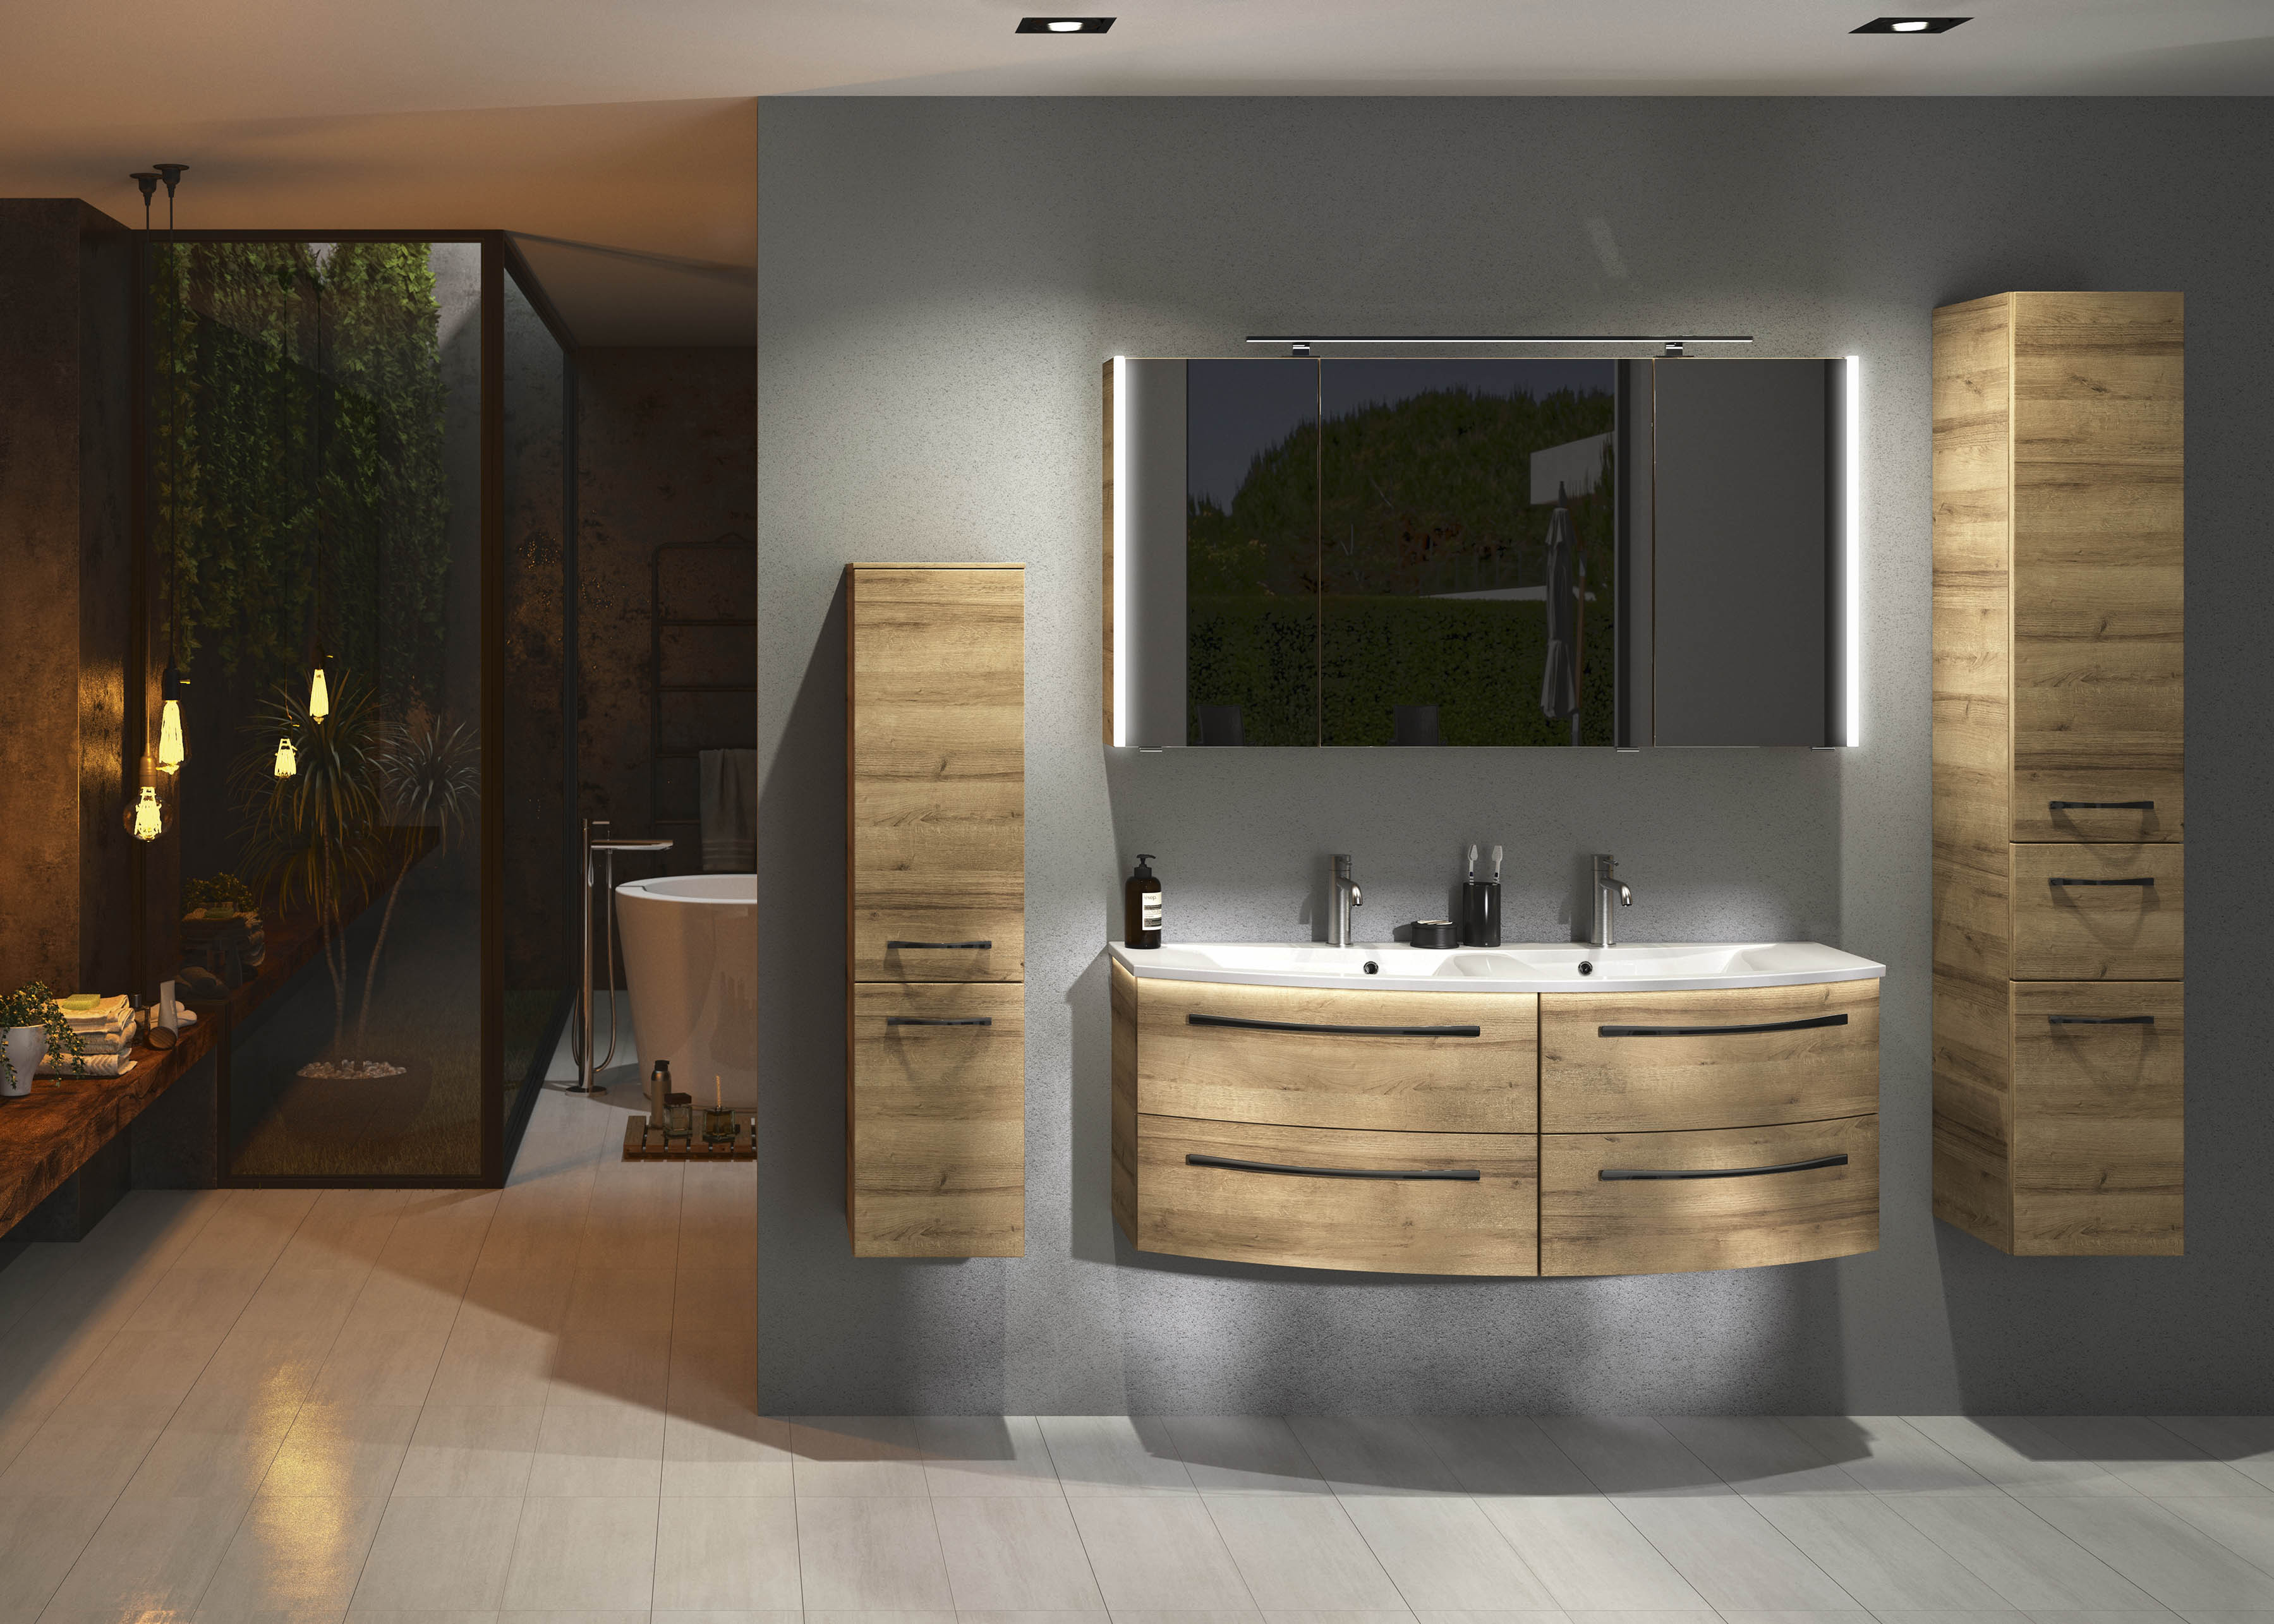 Mueble de baño con lavabo image roble 130x48 cm